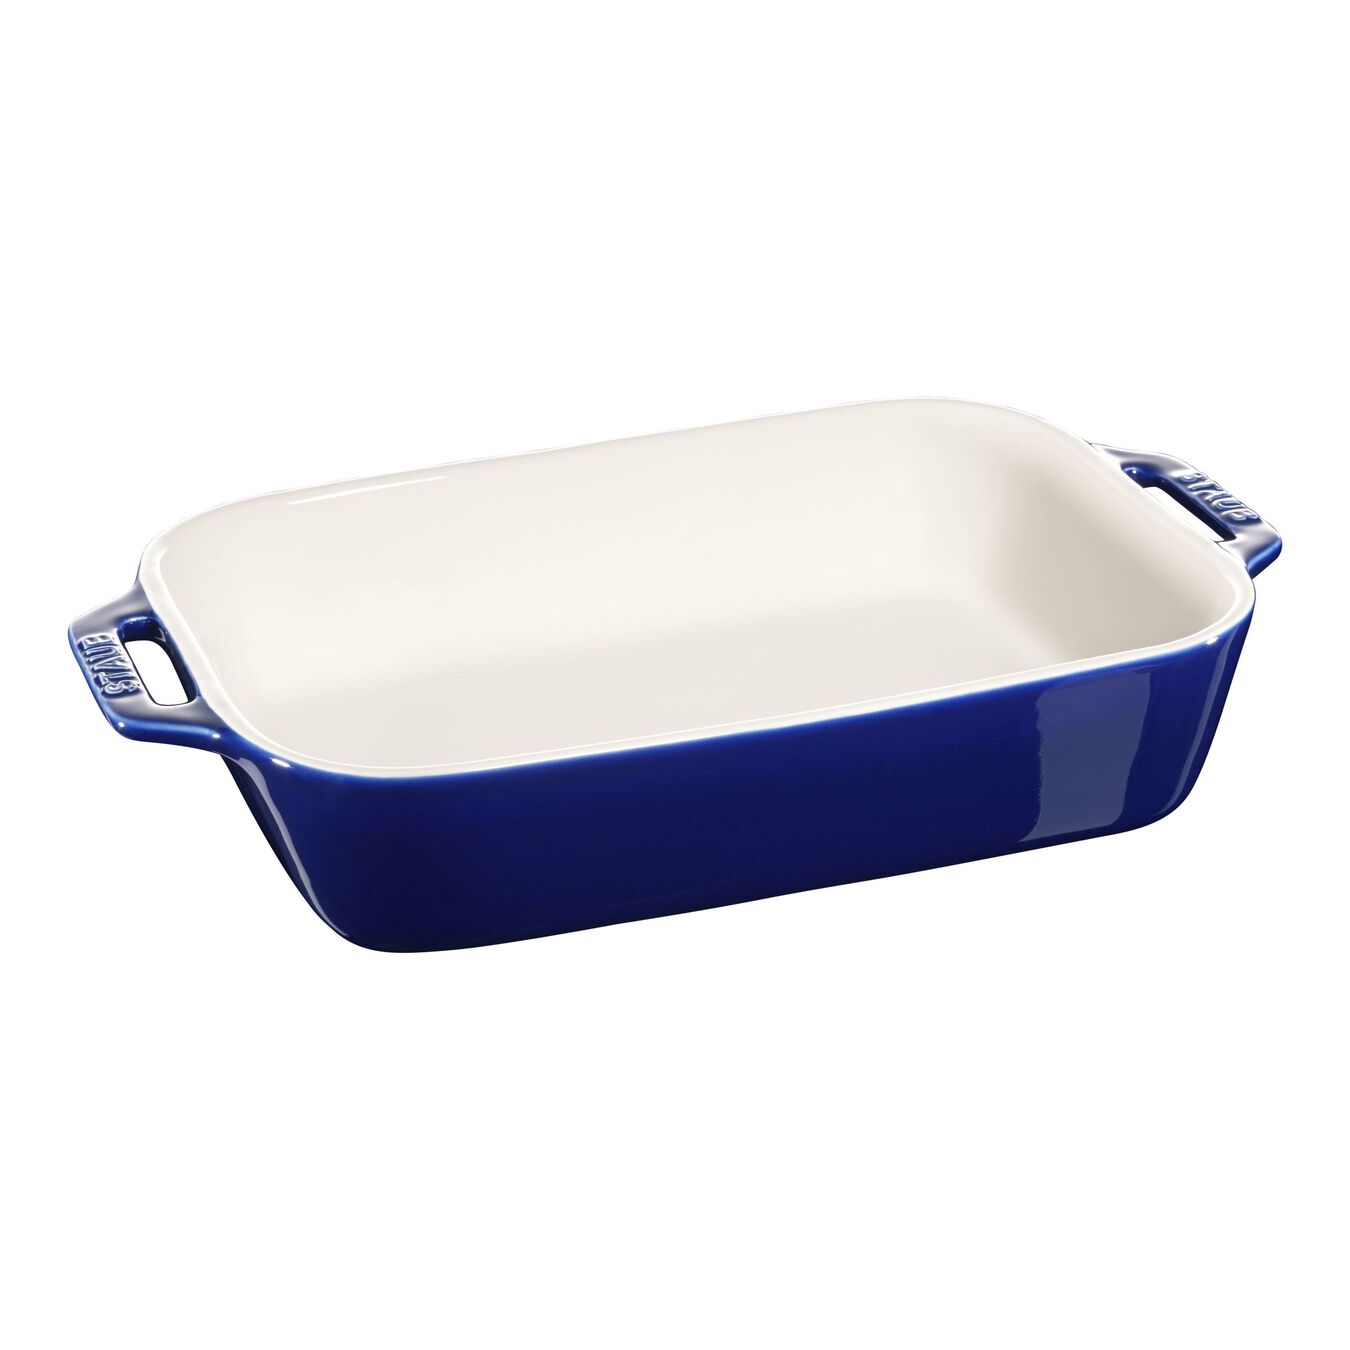 27 cm x 20 cm rectangular Ceramic Oven dish dark-blue,,large 1